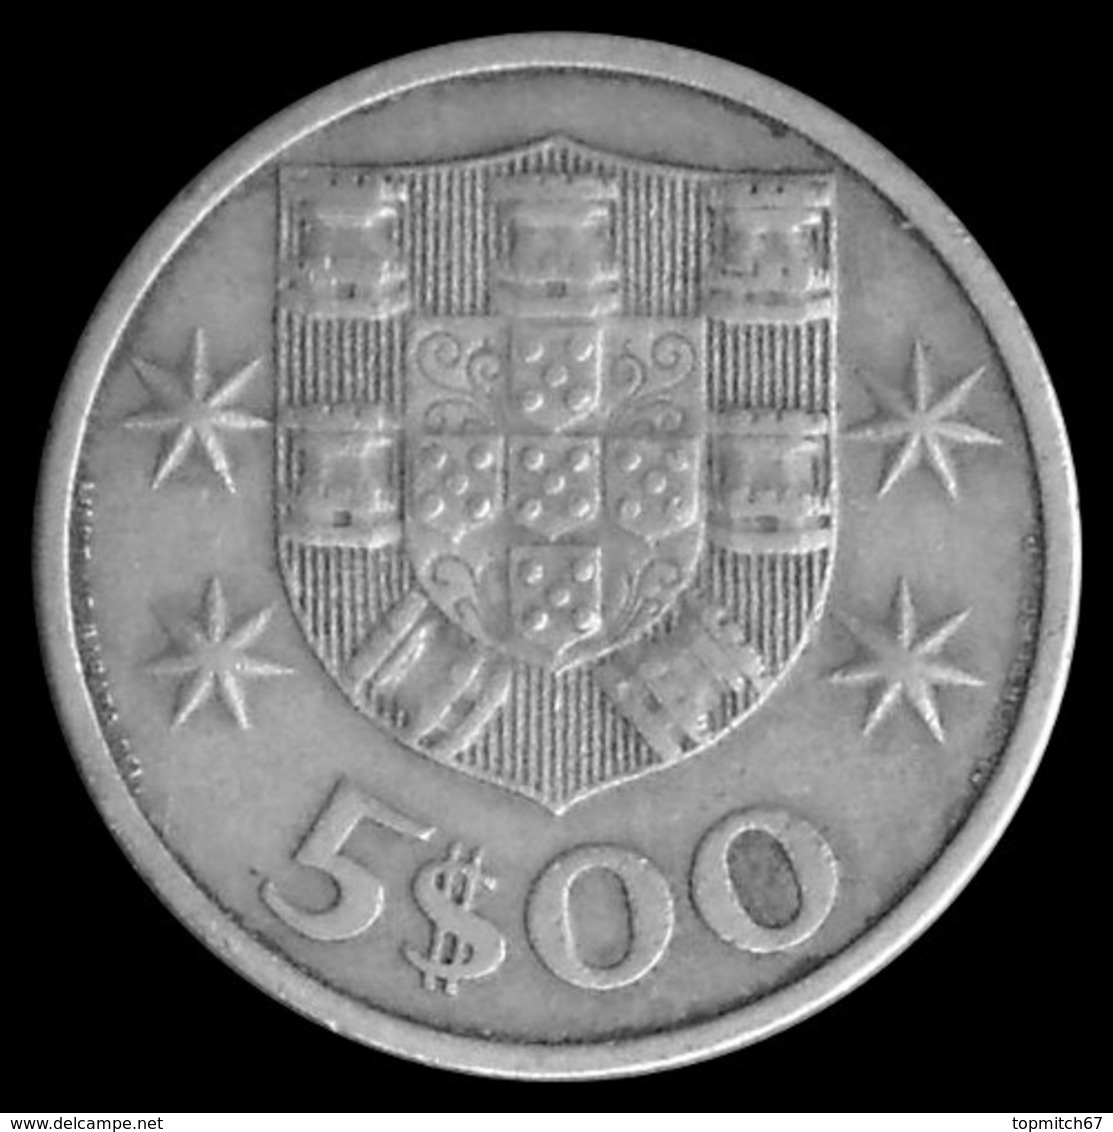 $G16 - 5 Escudos Coin - Portugal - 1970 - Portugal